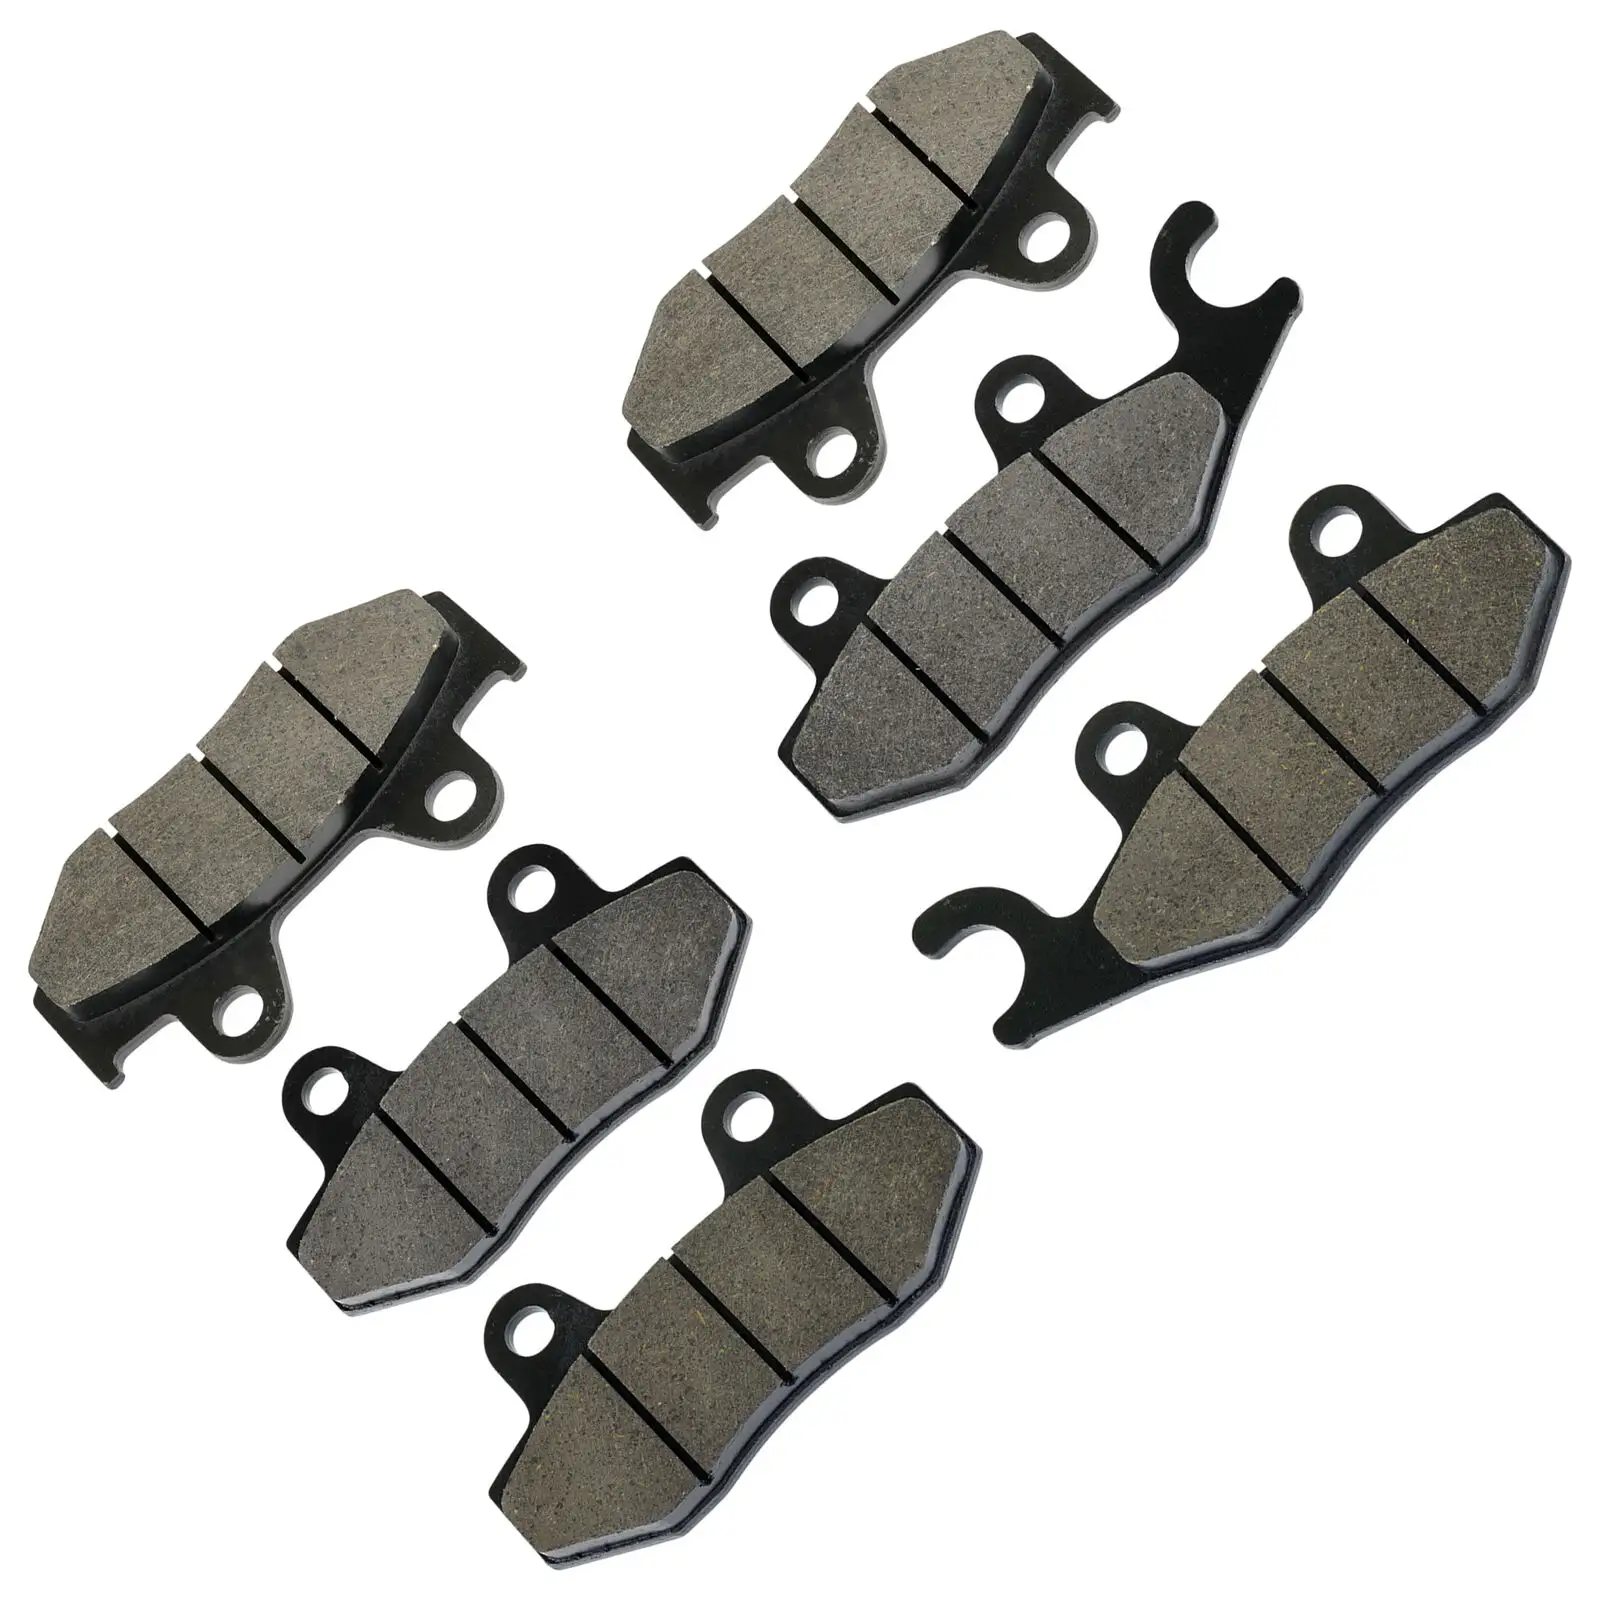 Atv utv parts top quality kit brake pads for Yamaha Raptor 700 700R YFM700R YFM 700R 2013-2020